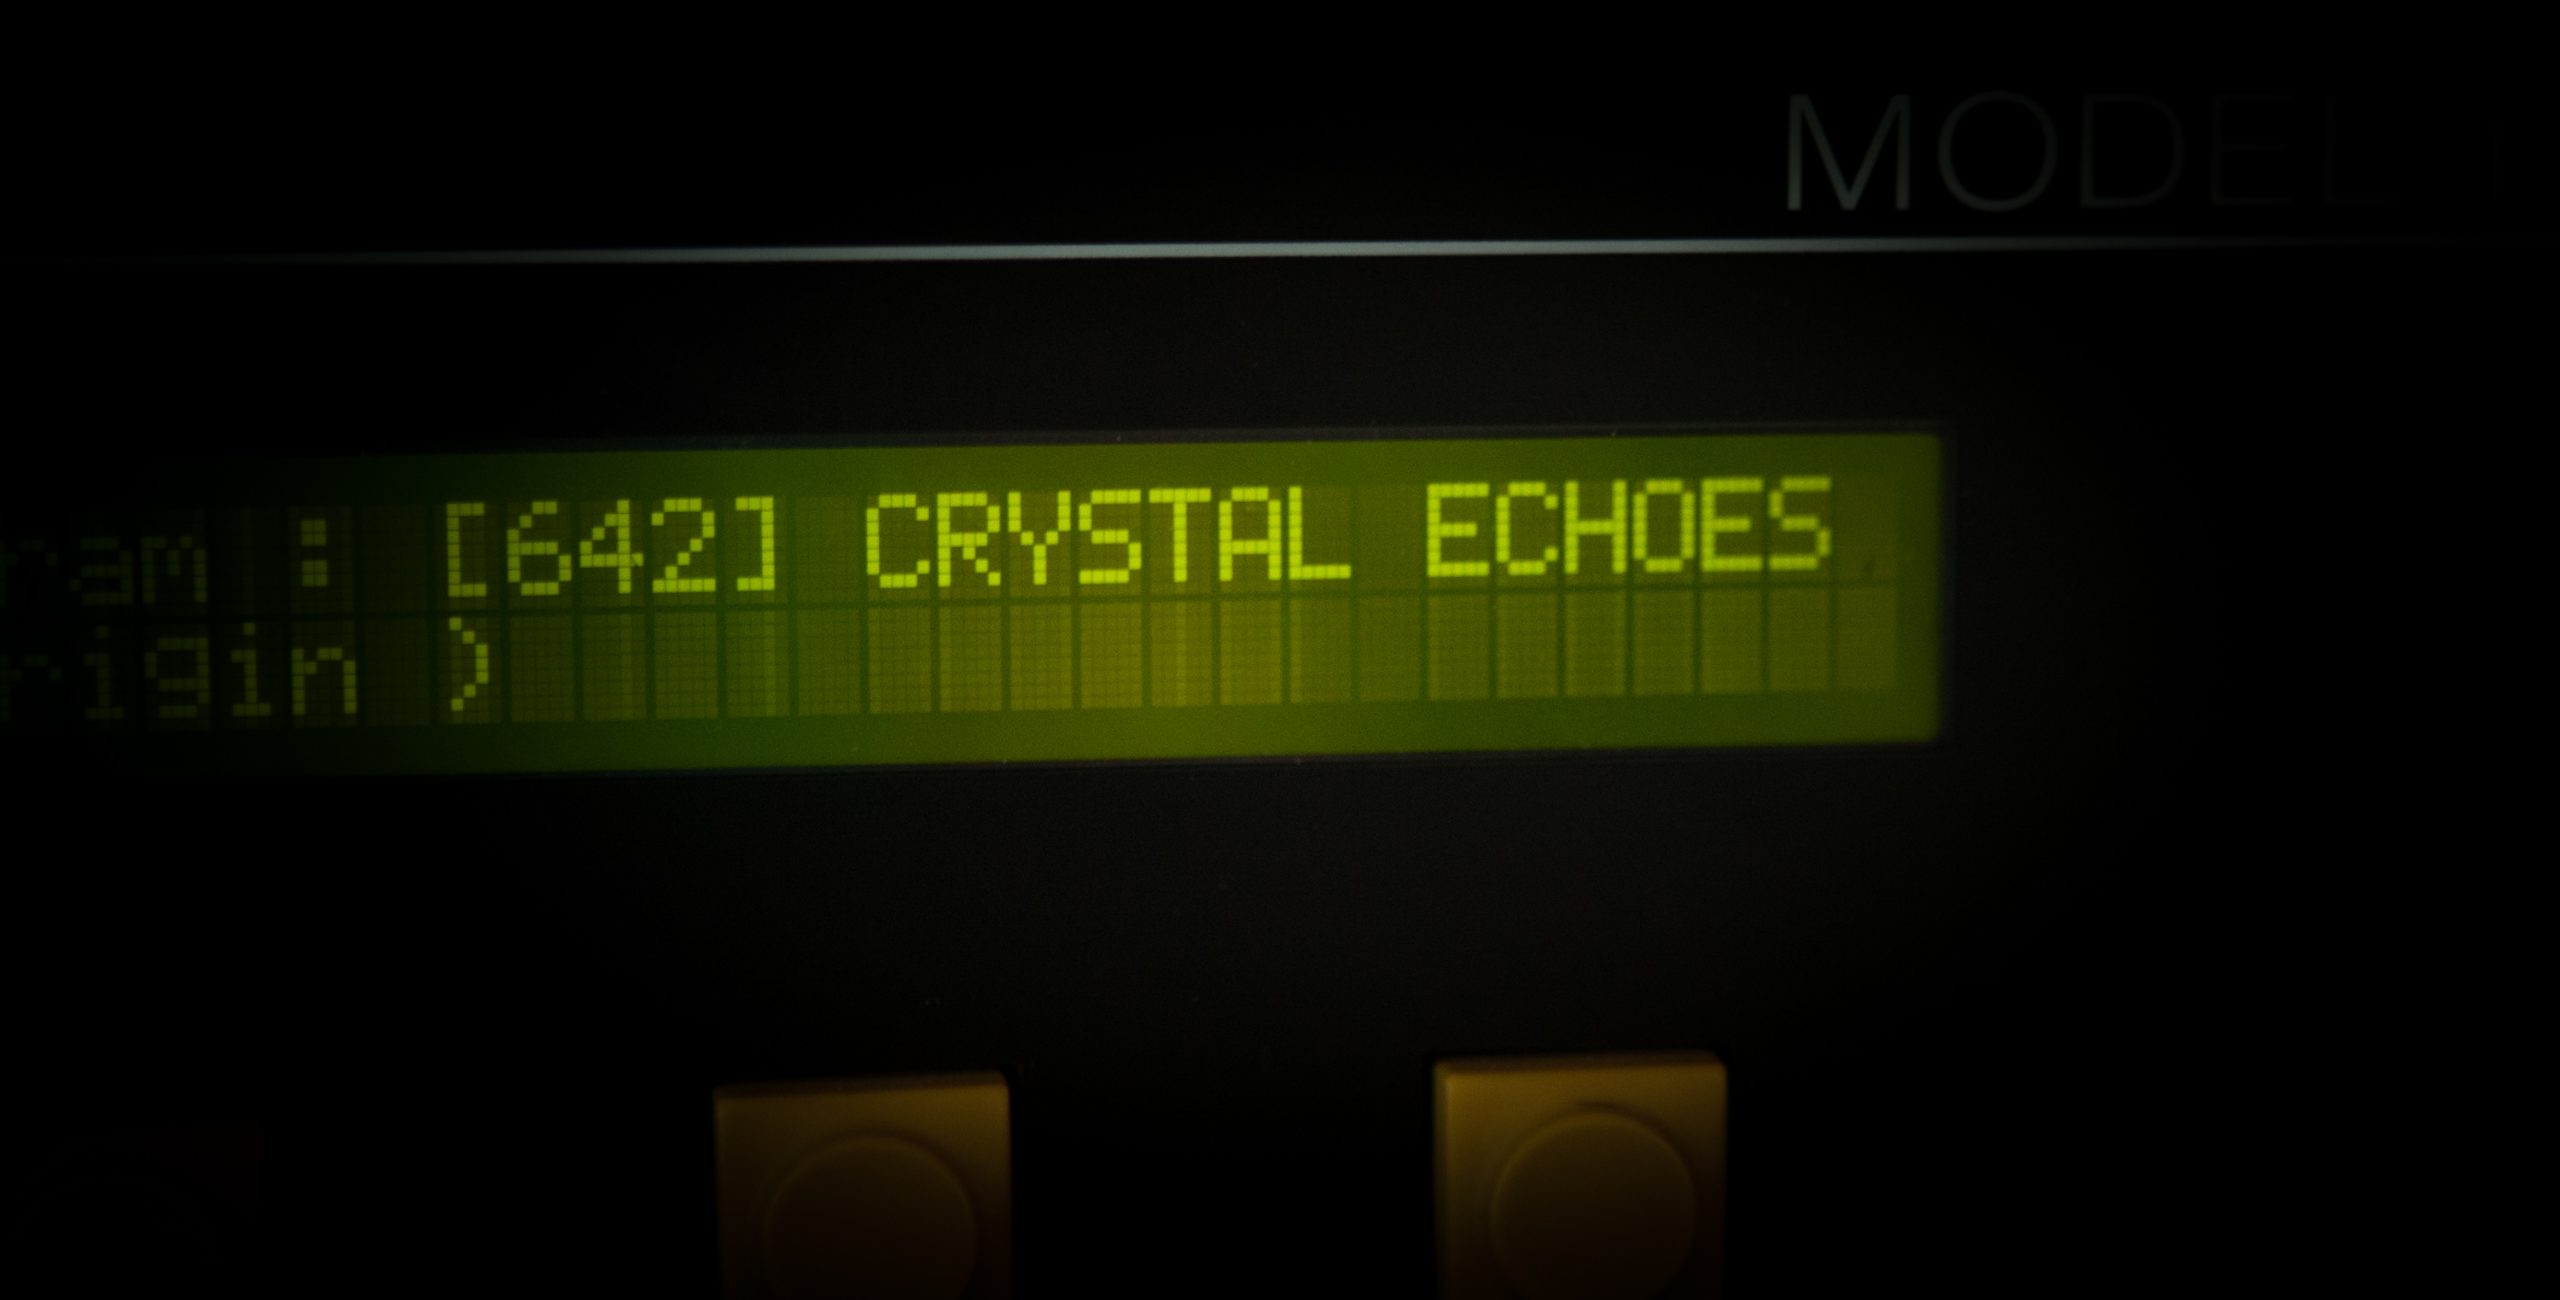 Soundtoys Crystallizer pluginsmasters